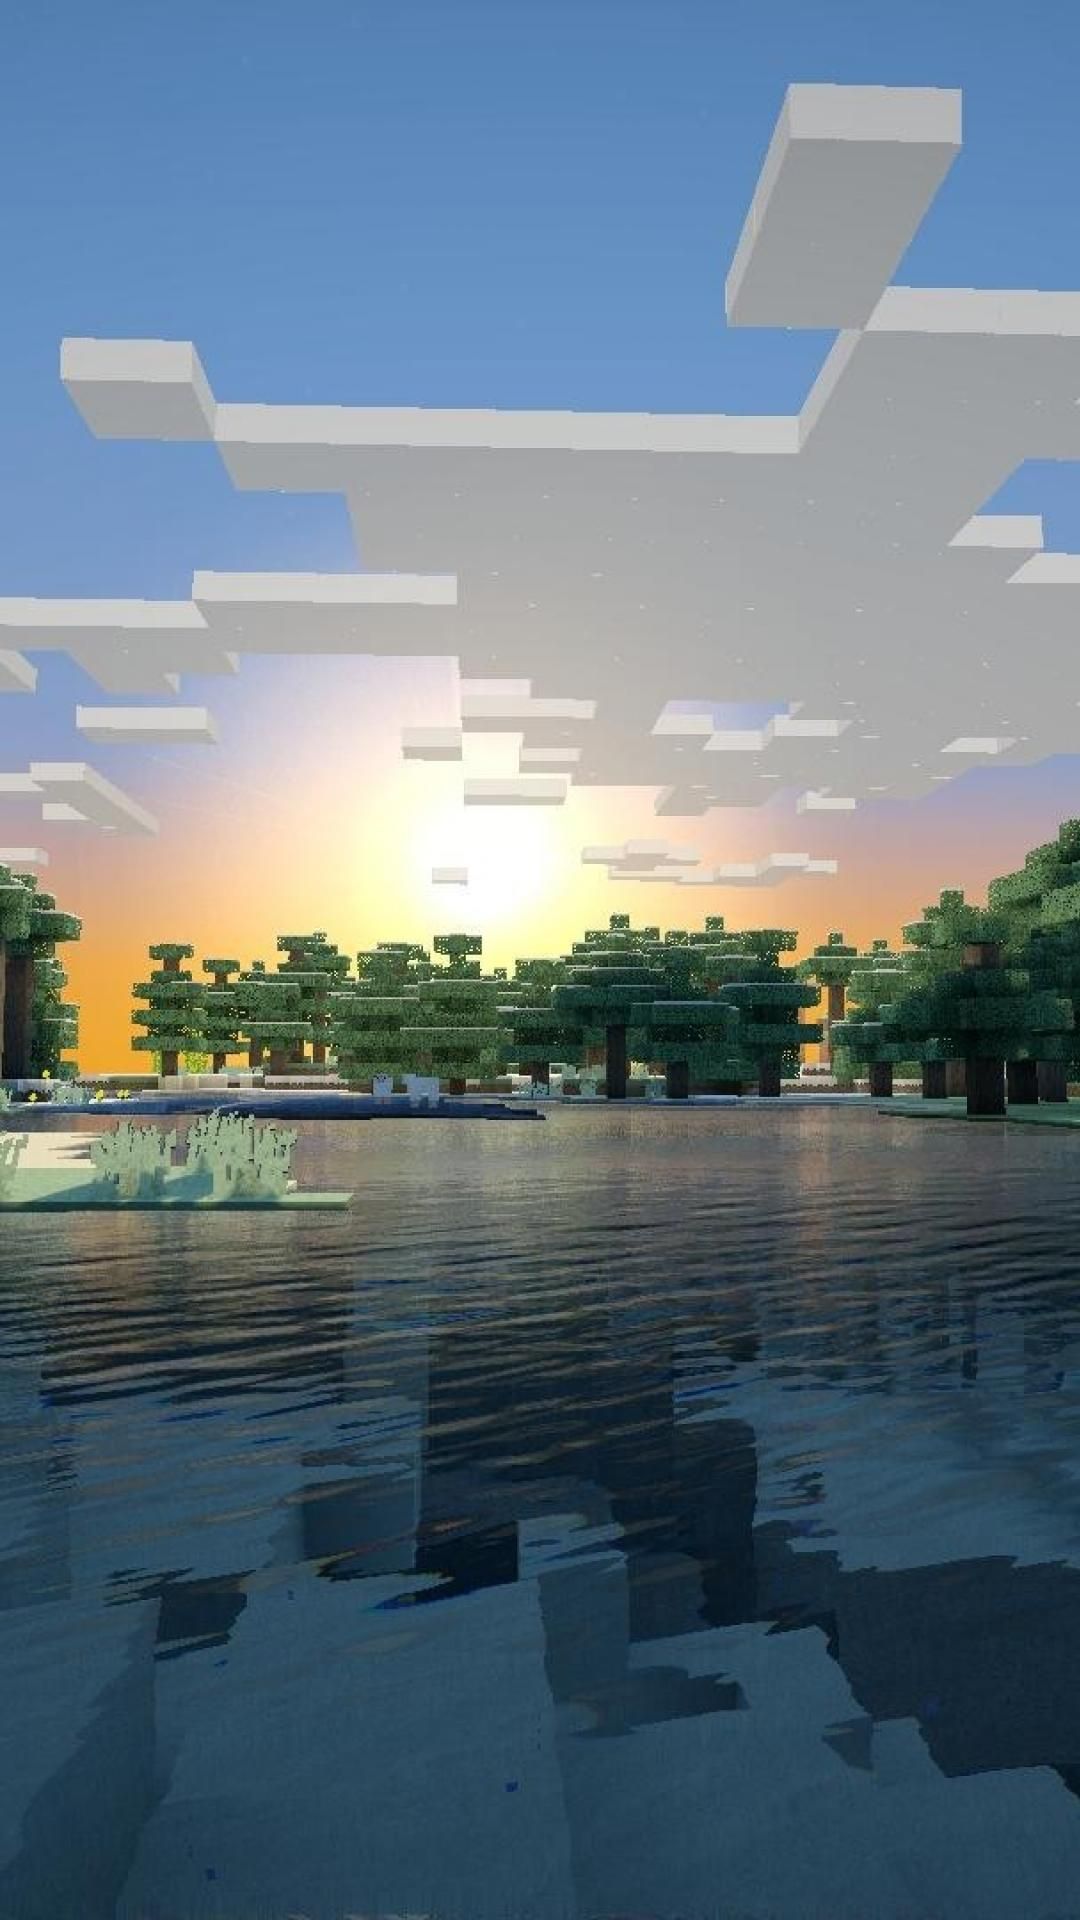 Wallpapers De Minecraft Em 4k Para Pc E Celular